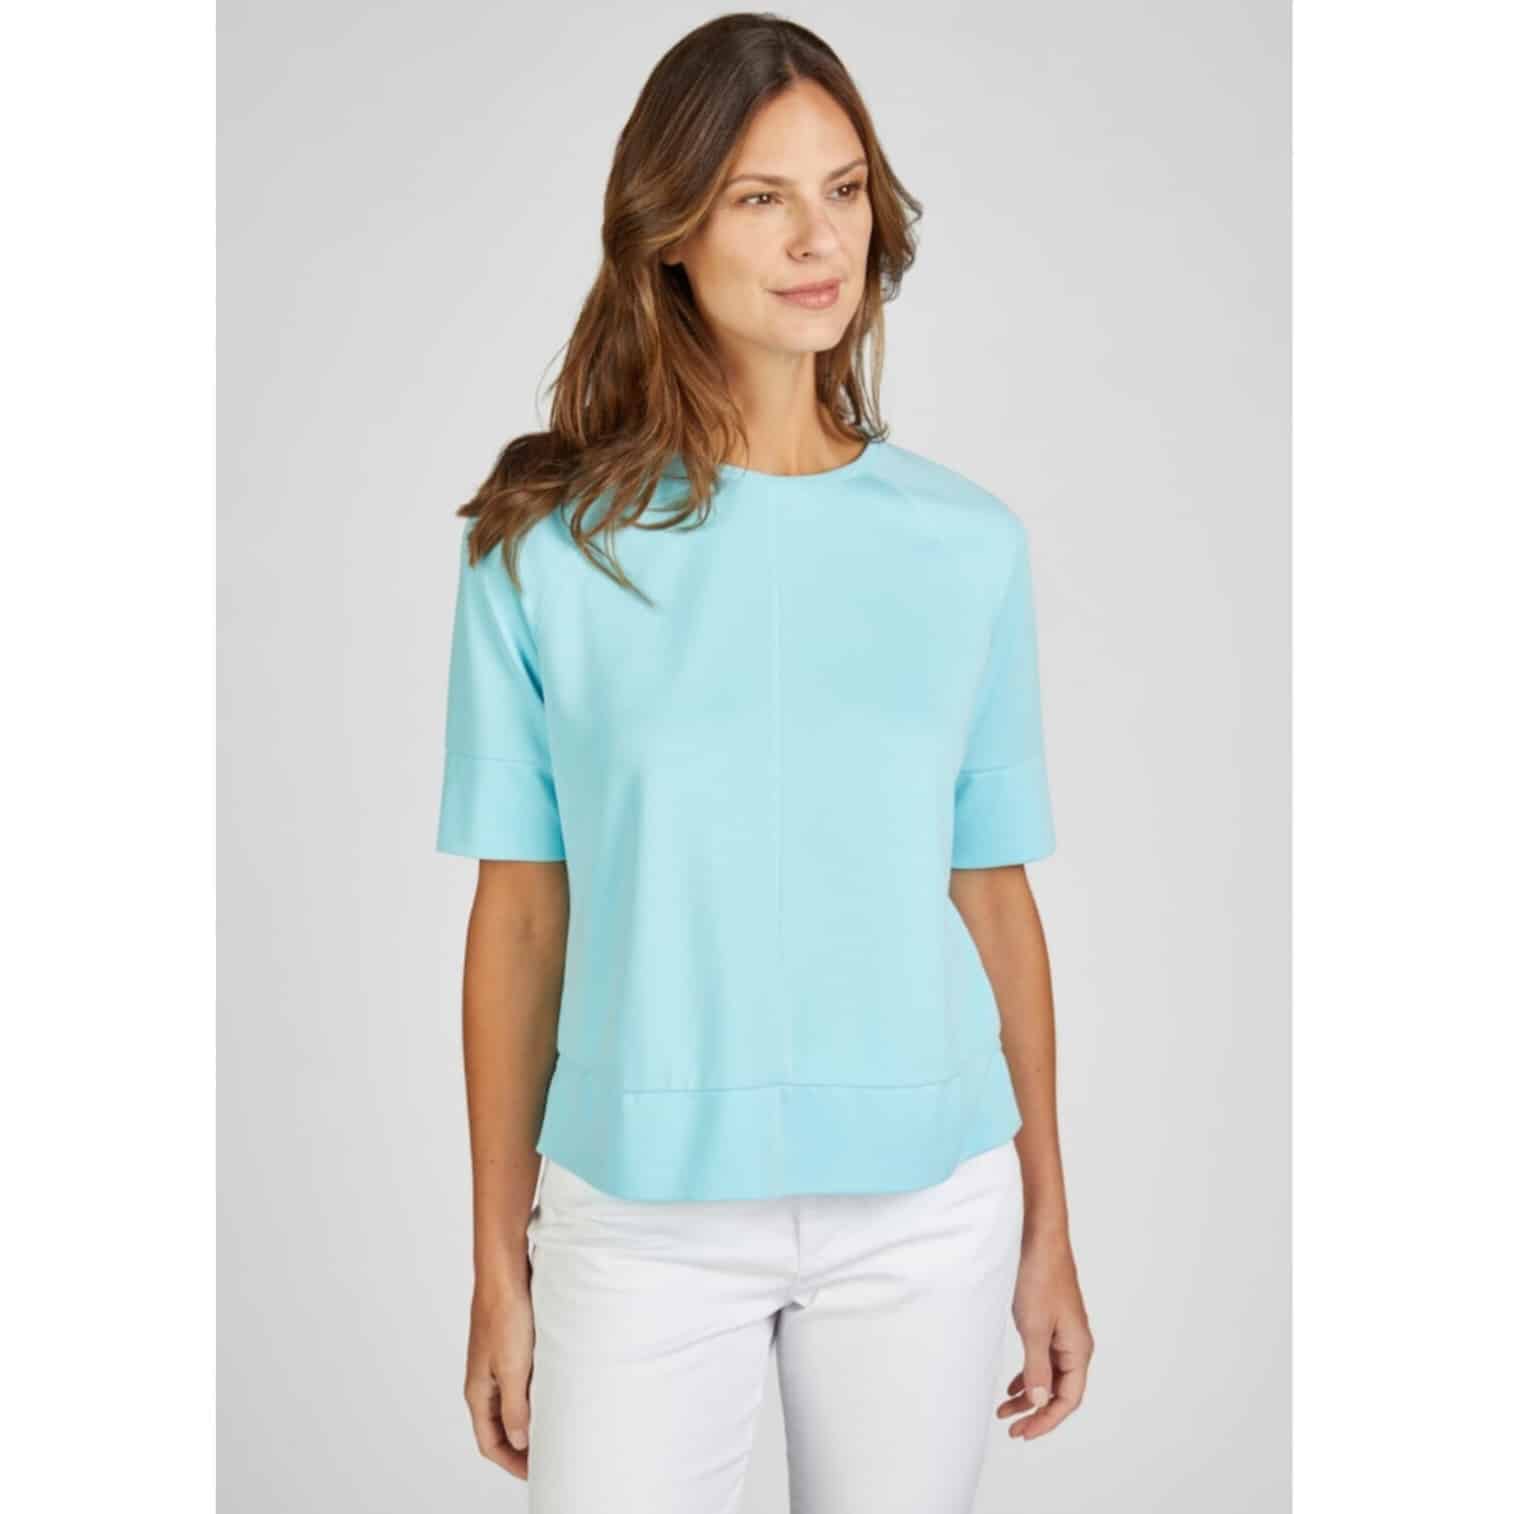 Einfarbiges T-Shirt für Damen in weicher Qualität, fließendes Material in türkis Artikel 52-123300 von Rabe Moden bei Mode Sabine Lemke in Winnenden im Remstal einkaufen